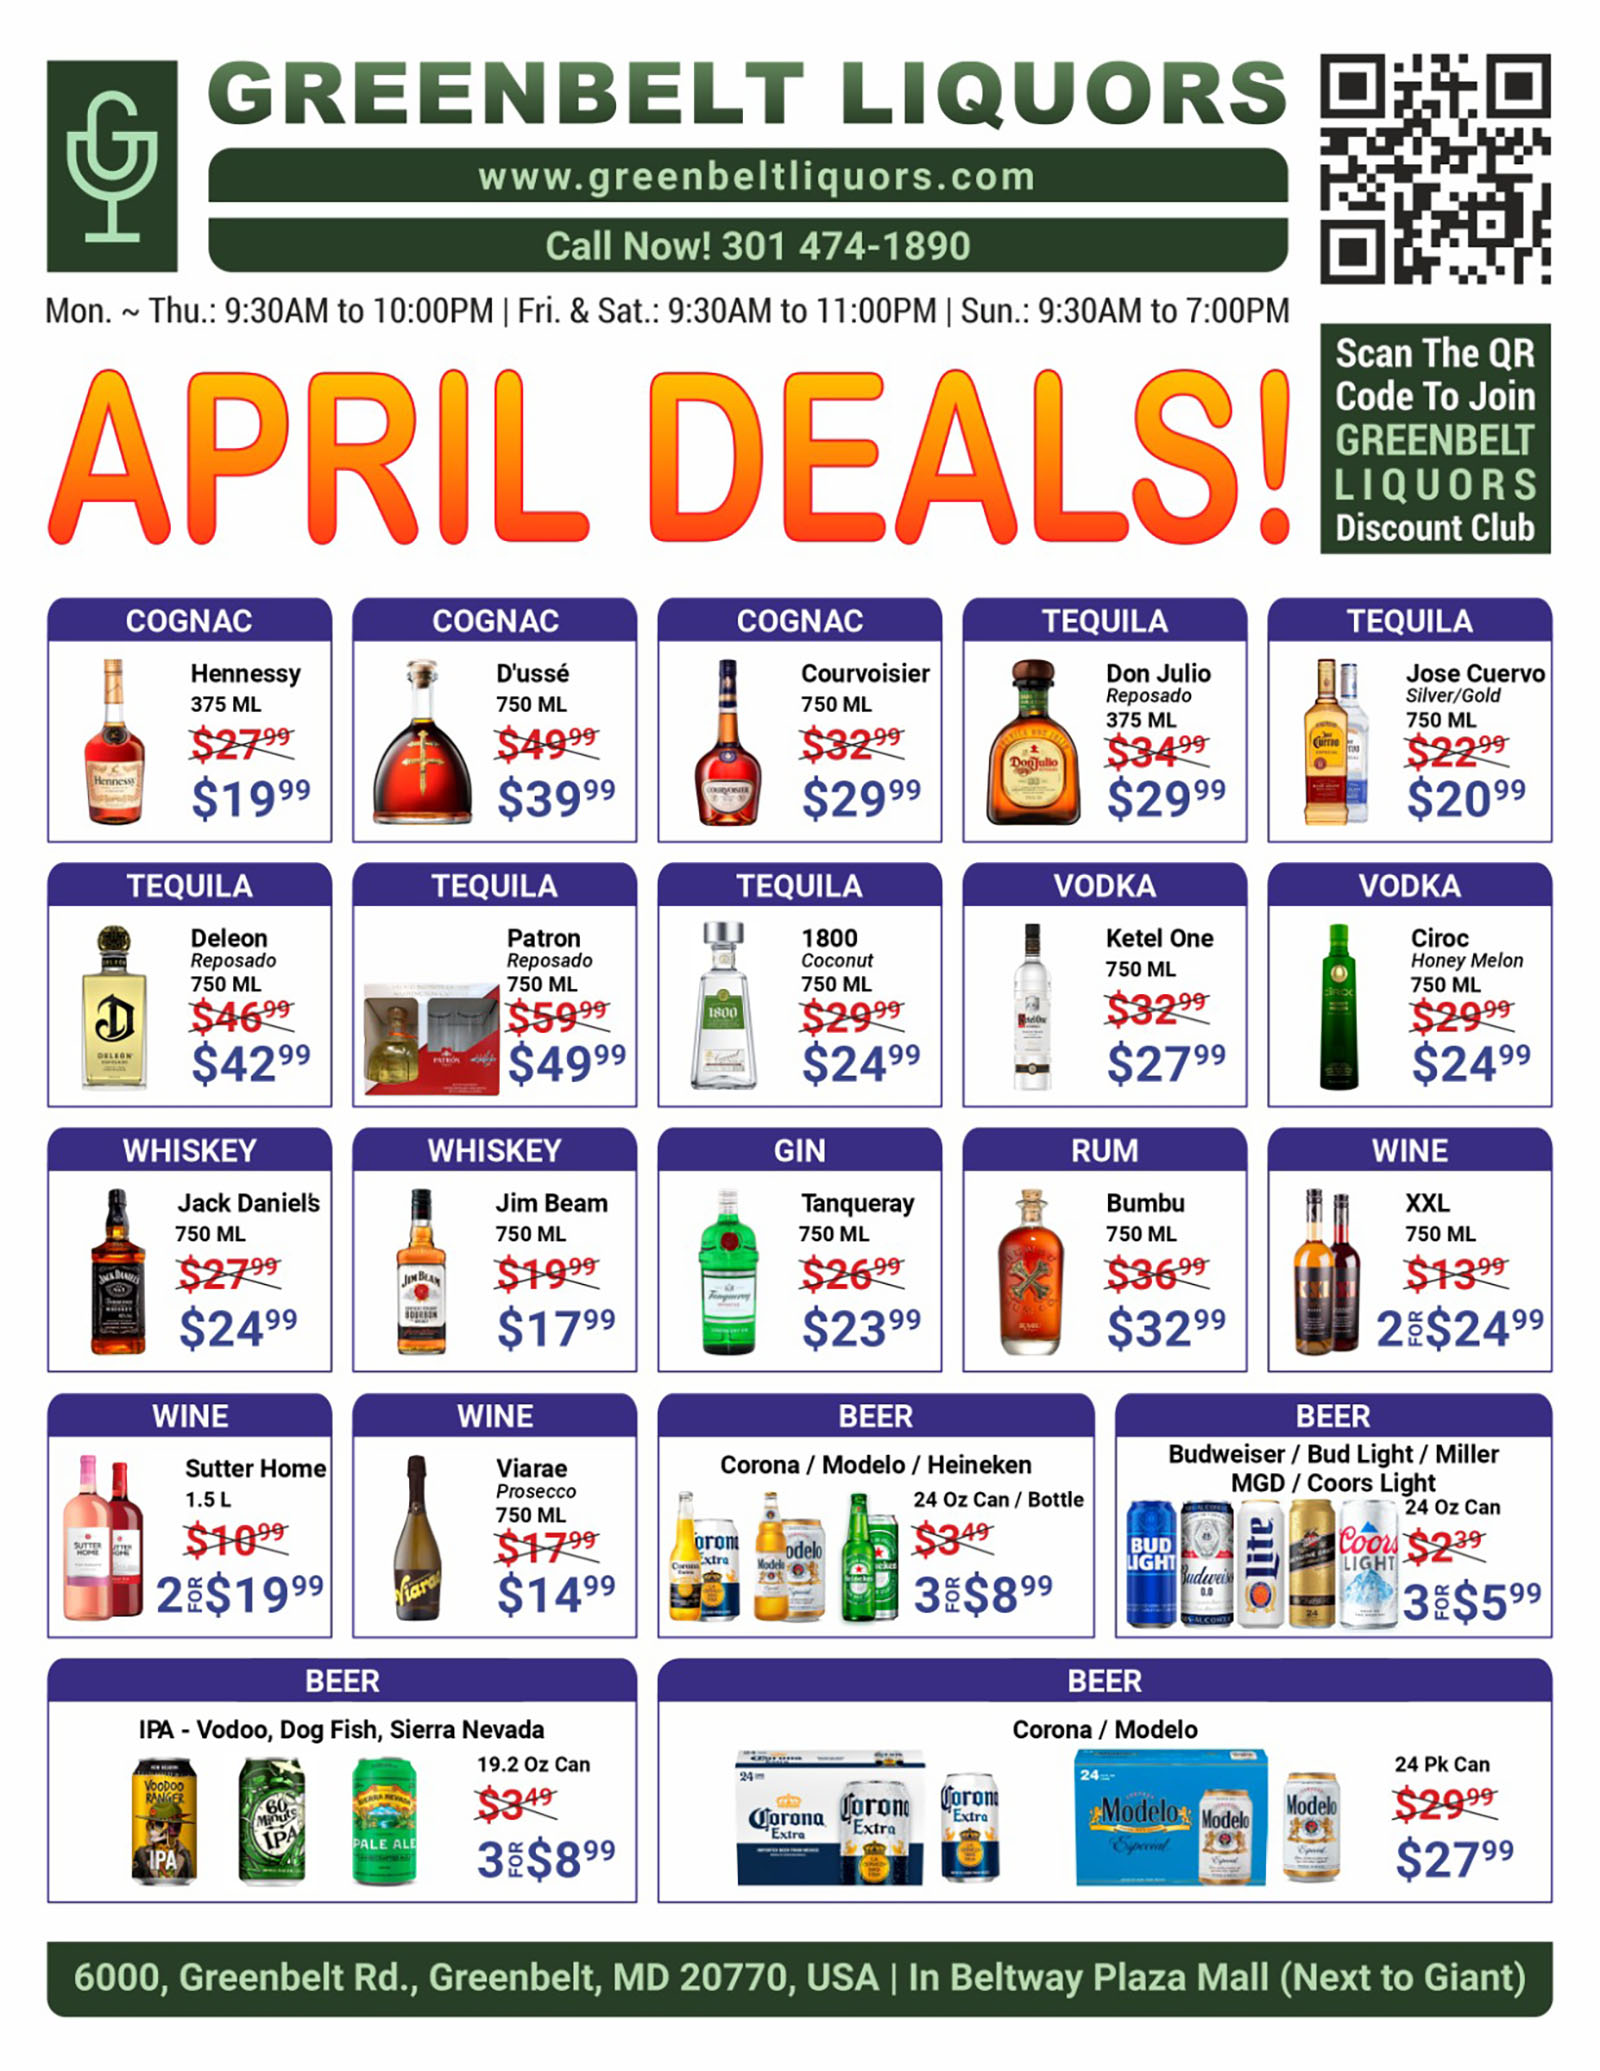 Greenbelt Liquors discount deals